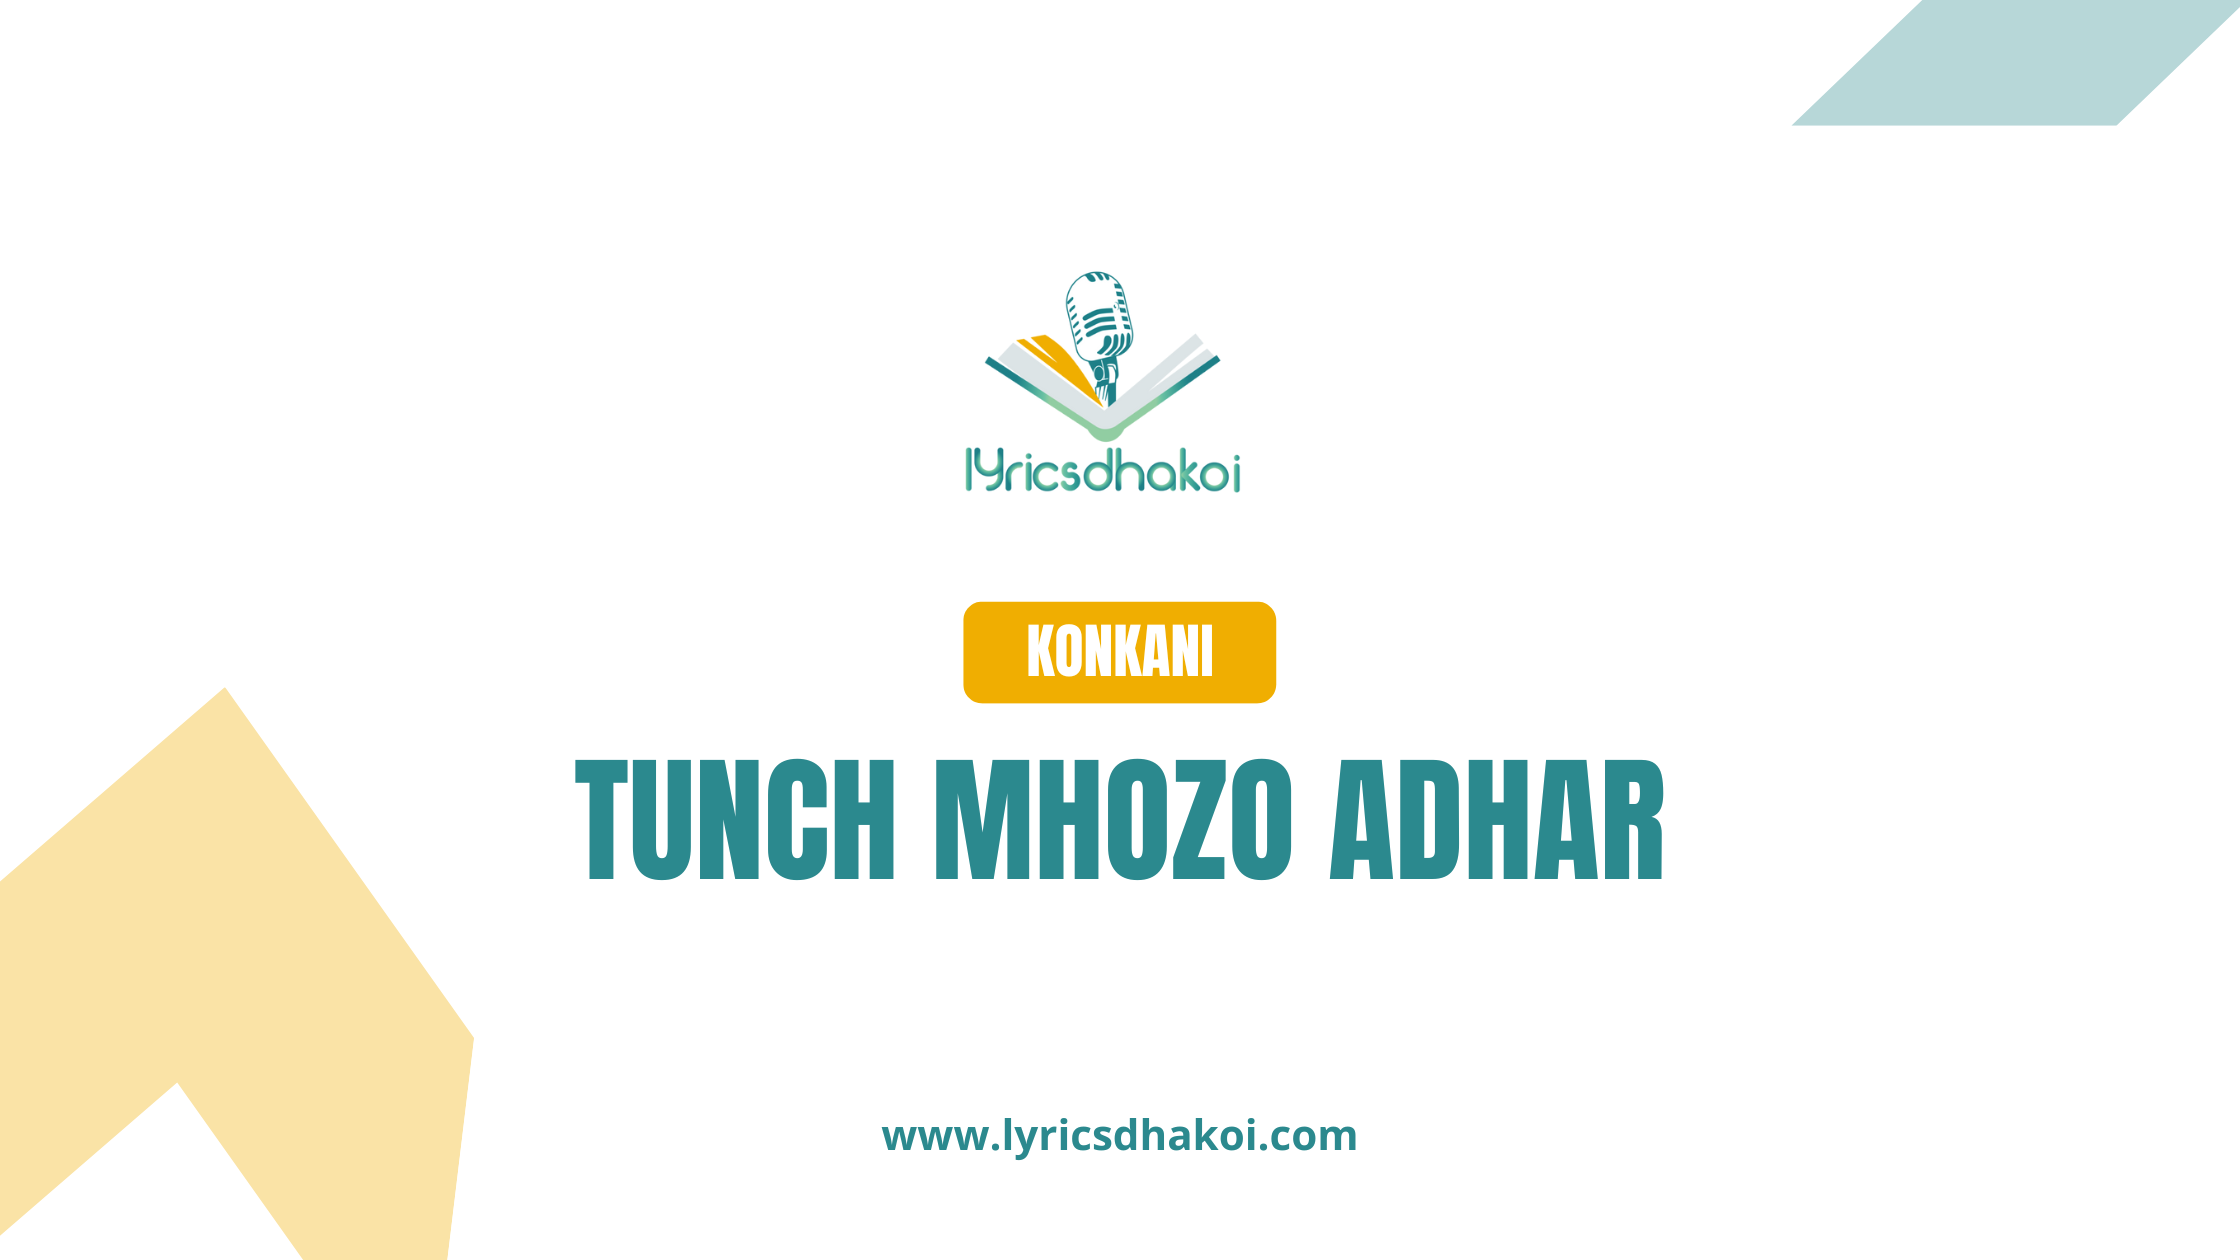 Tunch Mhozo Adhar Konkani Lyrics for Karaoke Online - LyricsDhakoi.com